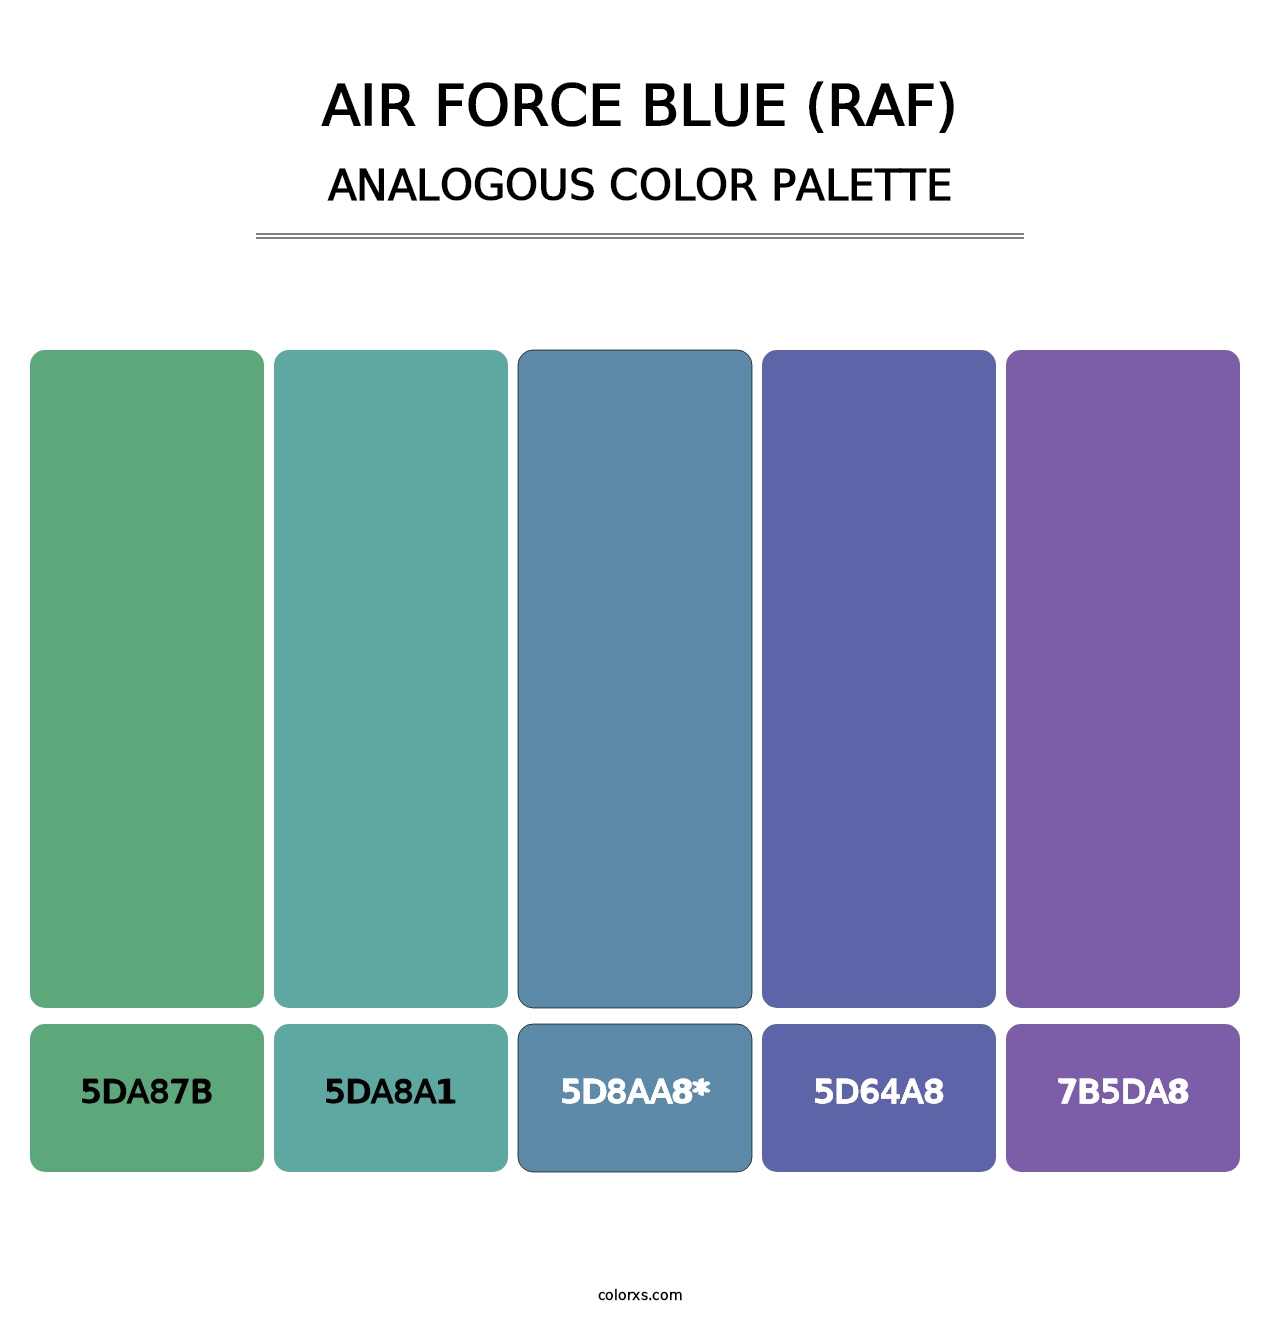 Air Force Blue (RAF) - Analogous Color Palette